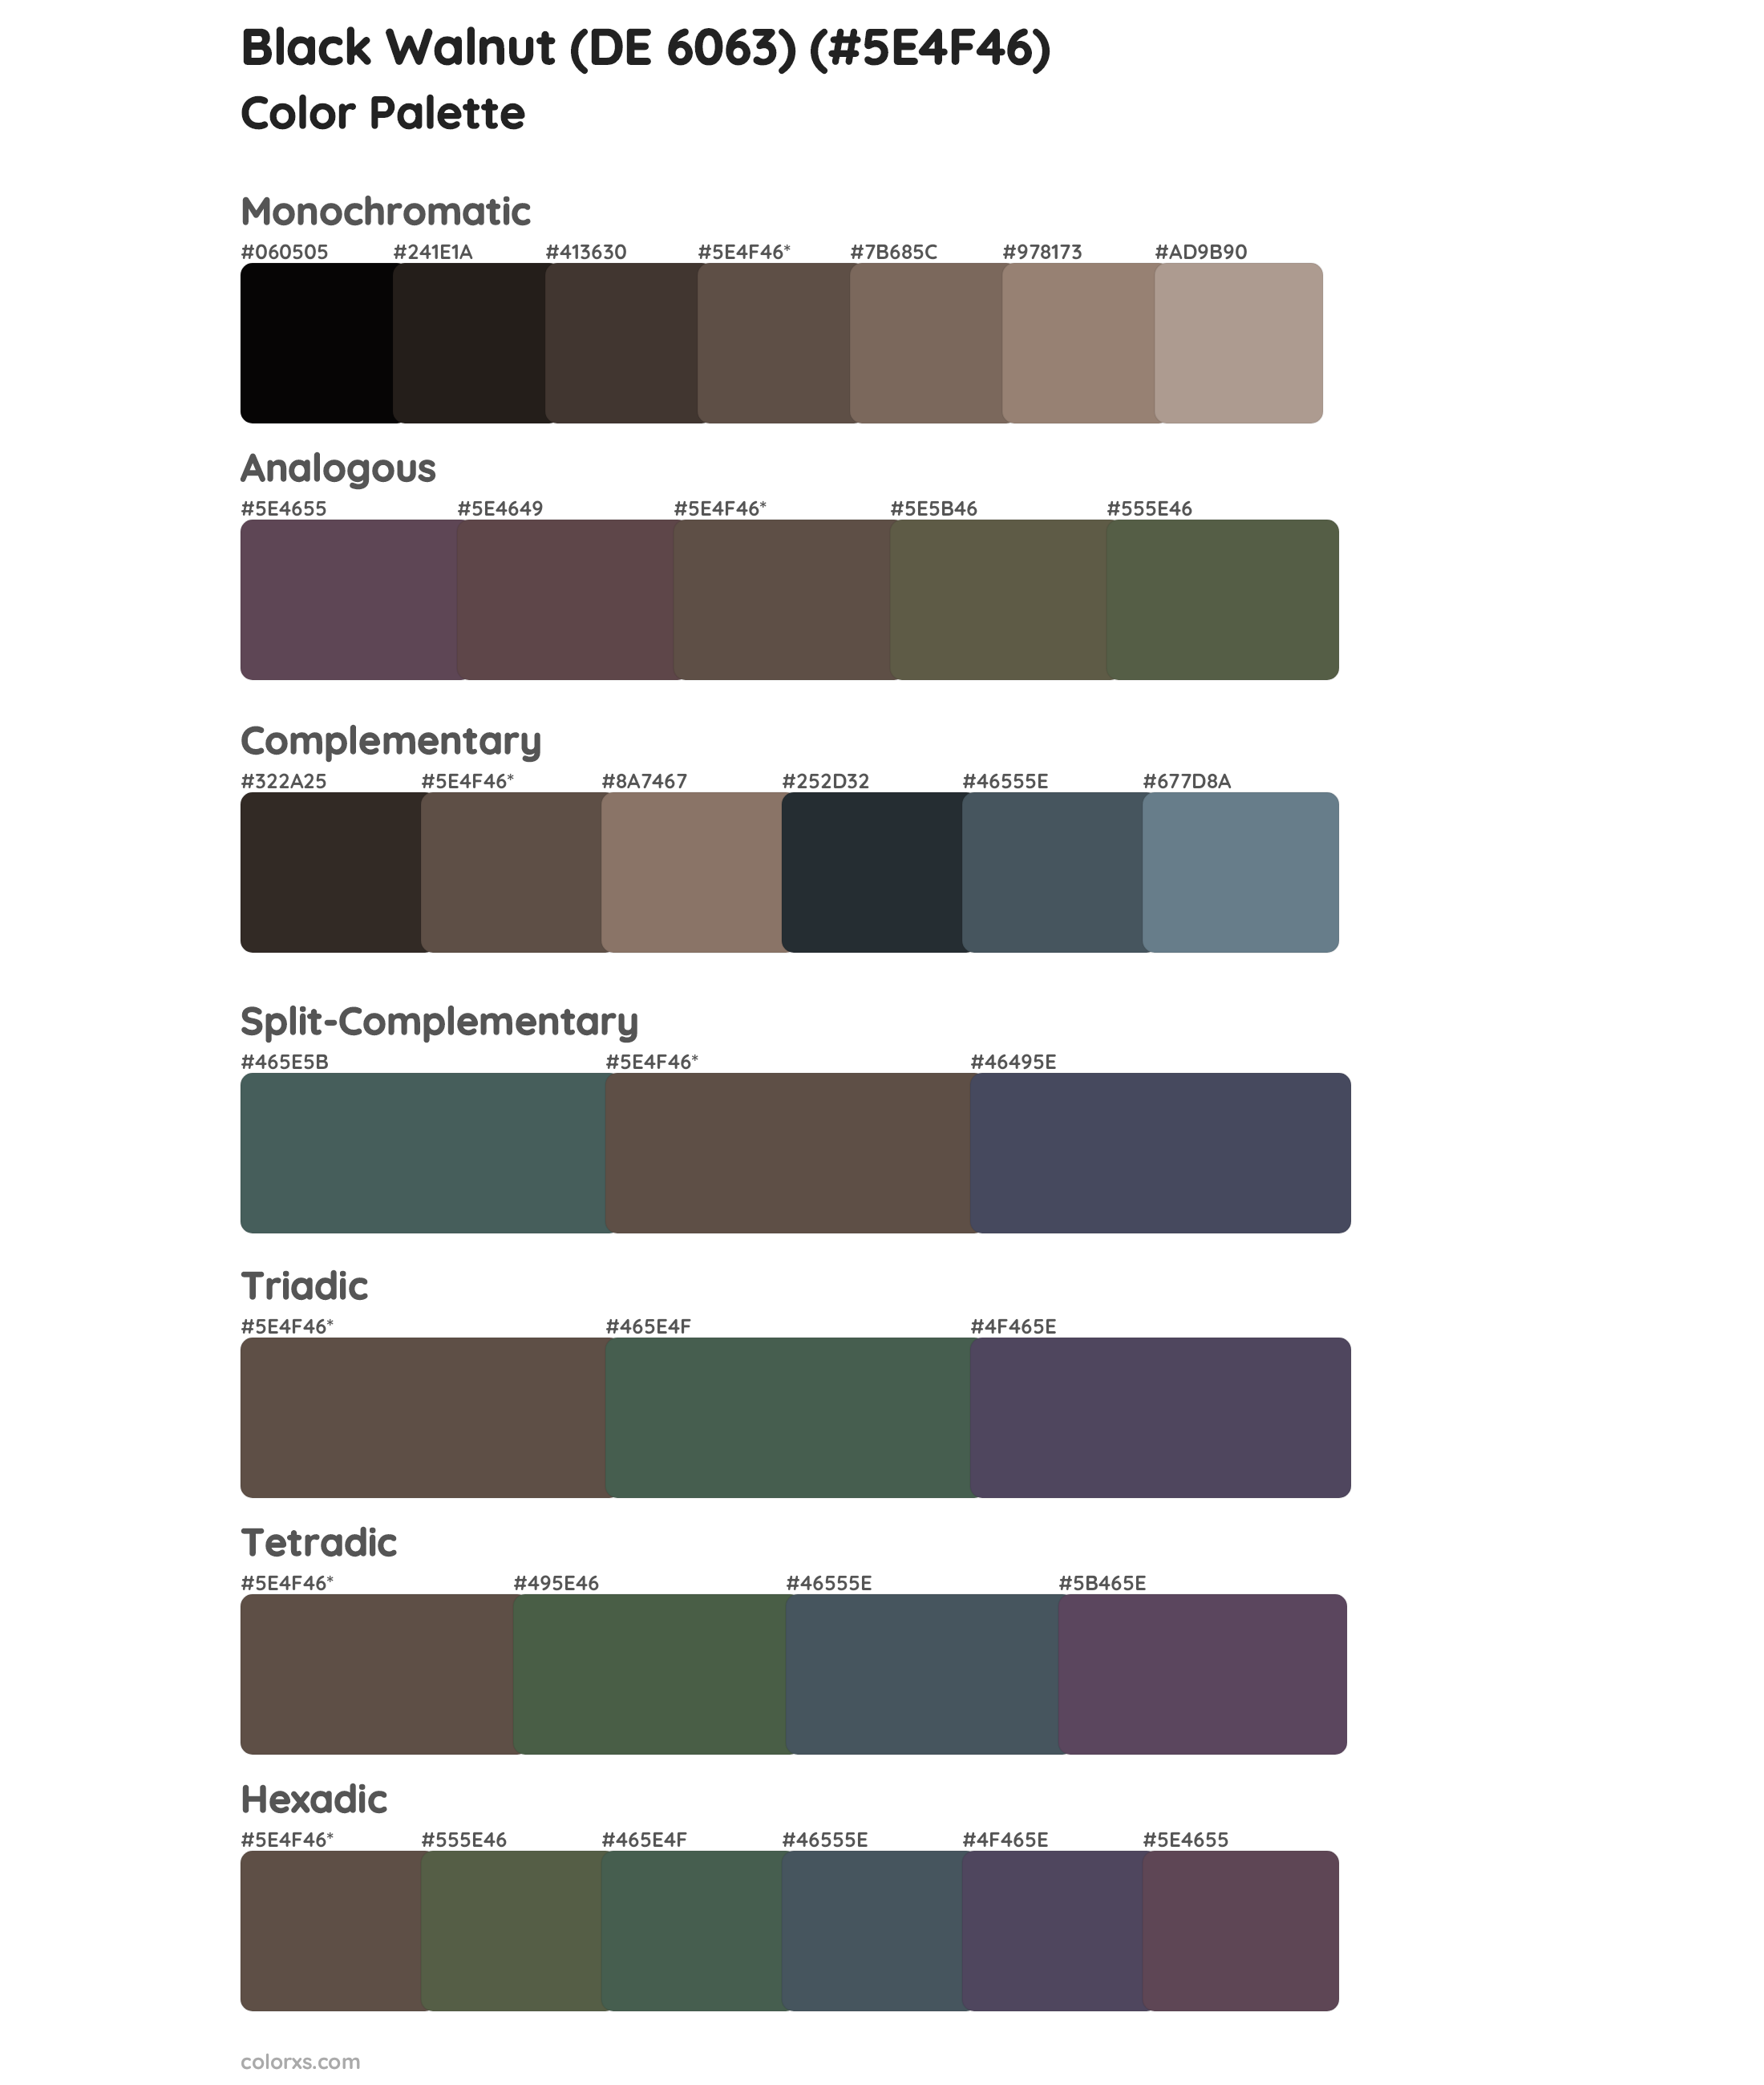 Black Walnut (DE 6063) Color Scheme Palettes